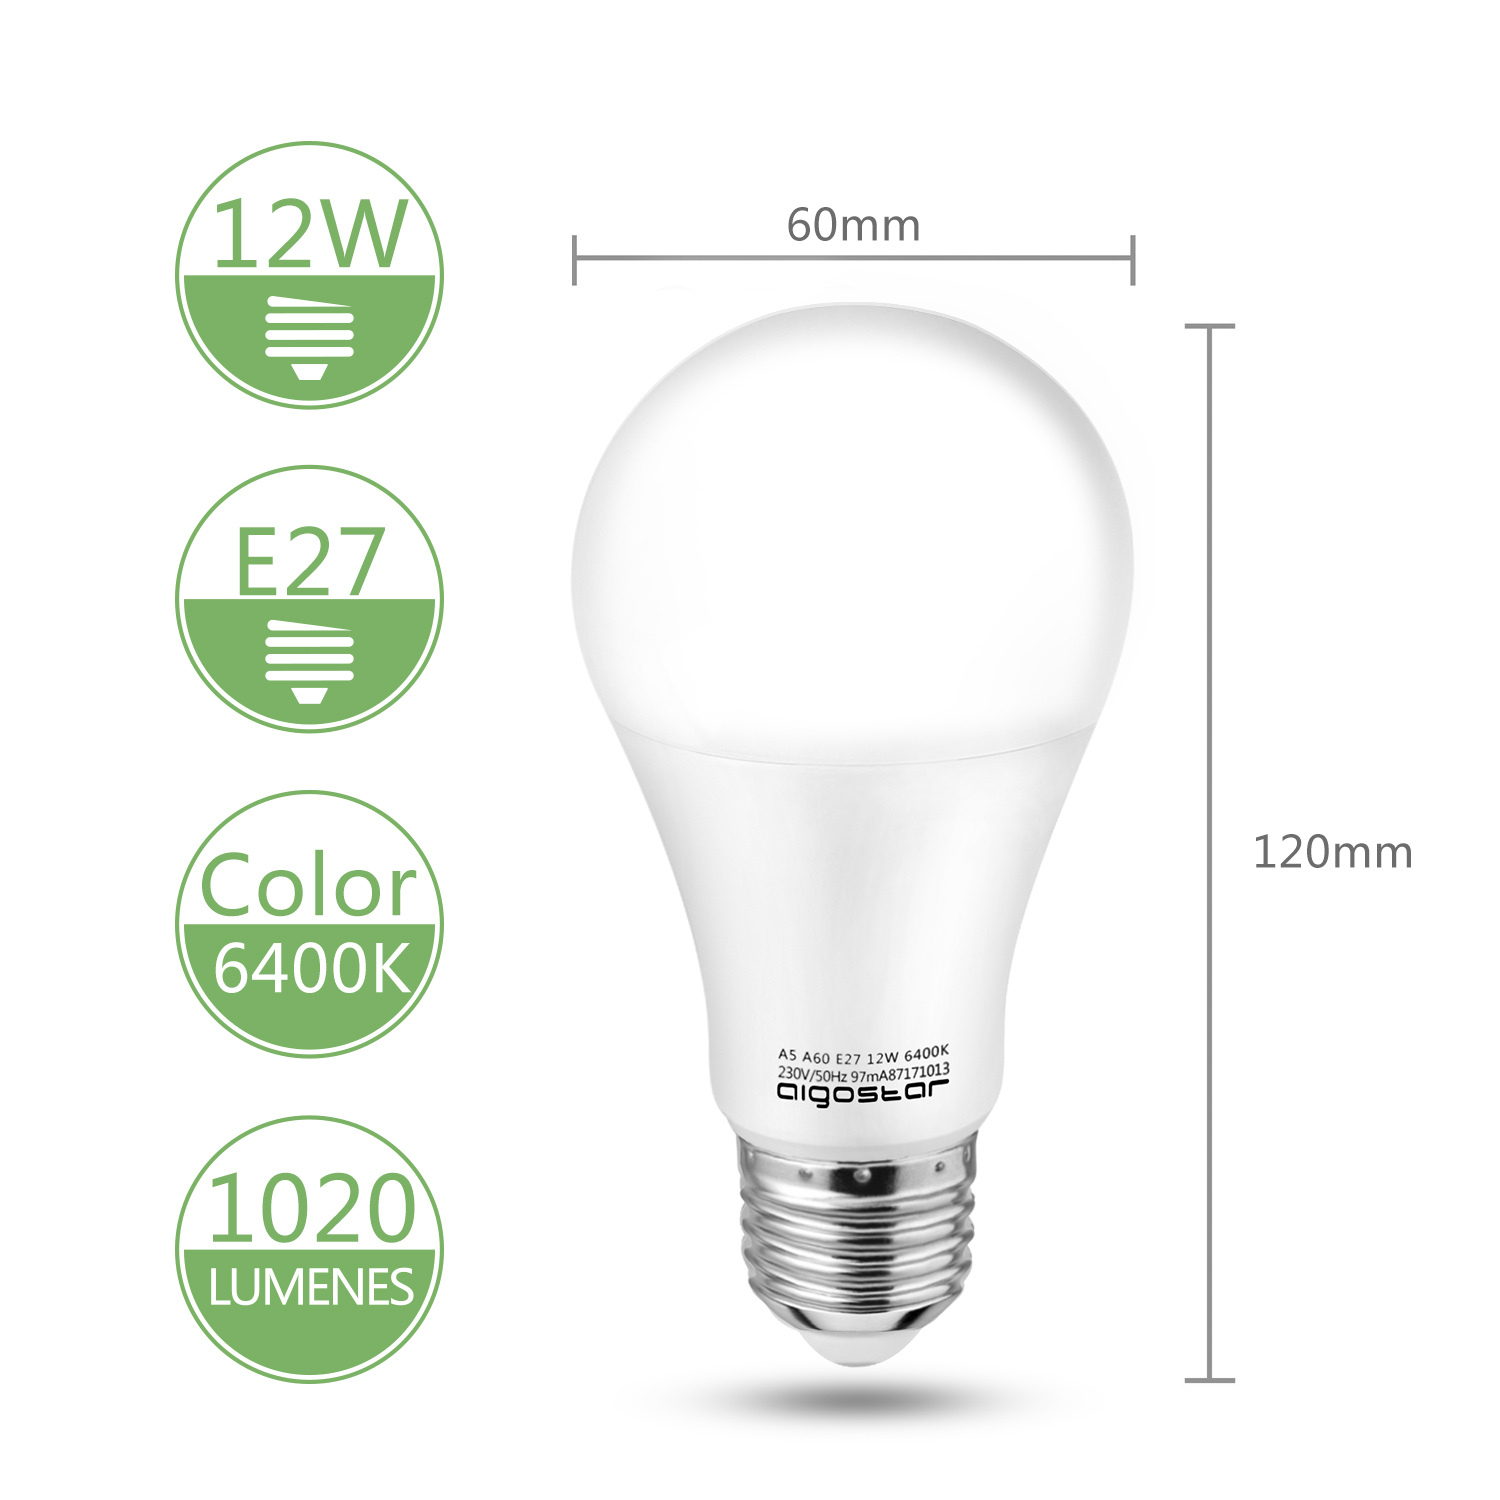 Aigostar LED lamp A5 A60 12W - E27 Fitting - Daglicht 6400K - 1020 lumen - Set van 5 stuks.